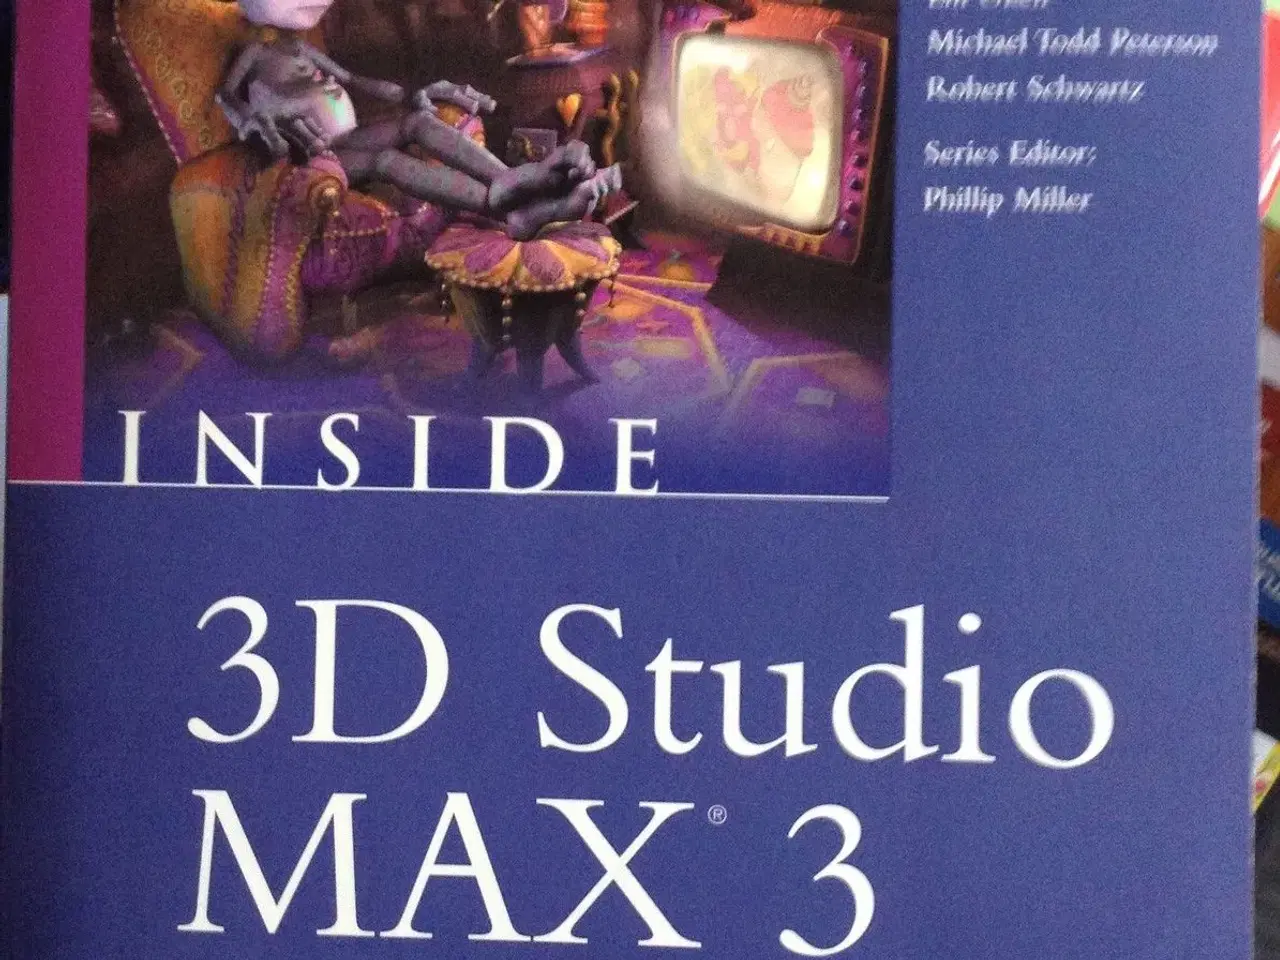 Billede 1 - 3D studio MAX3, Inside